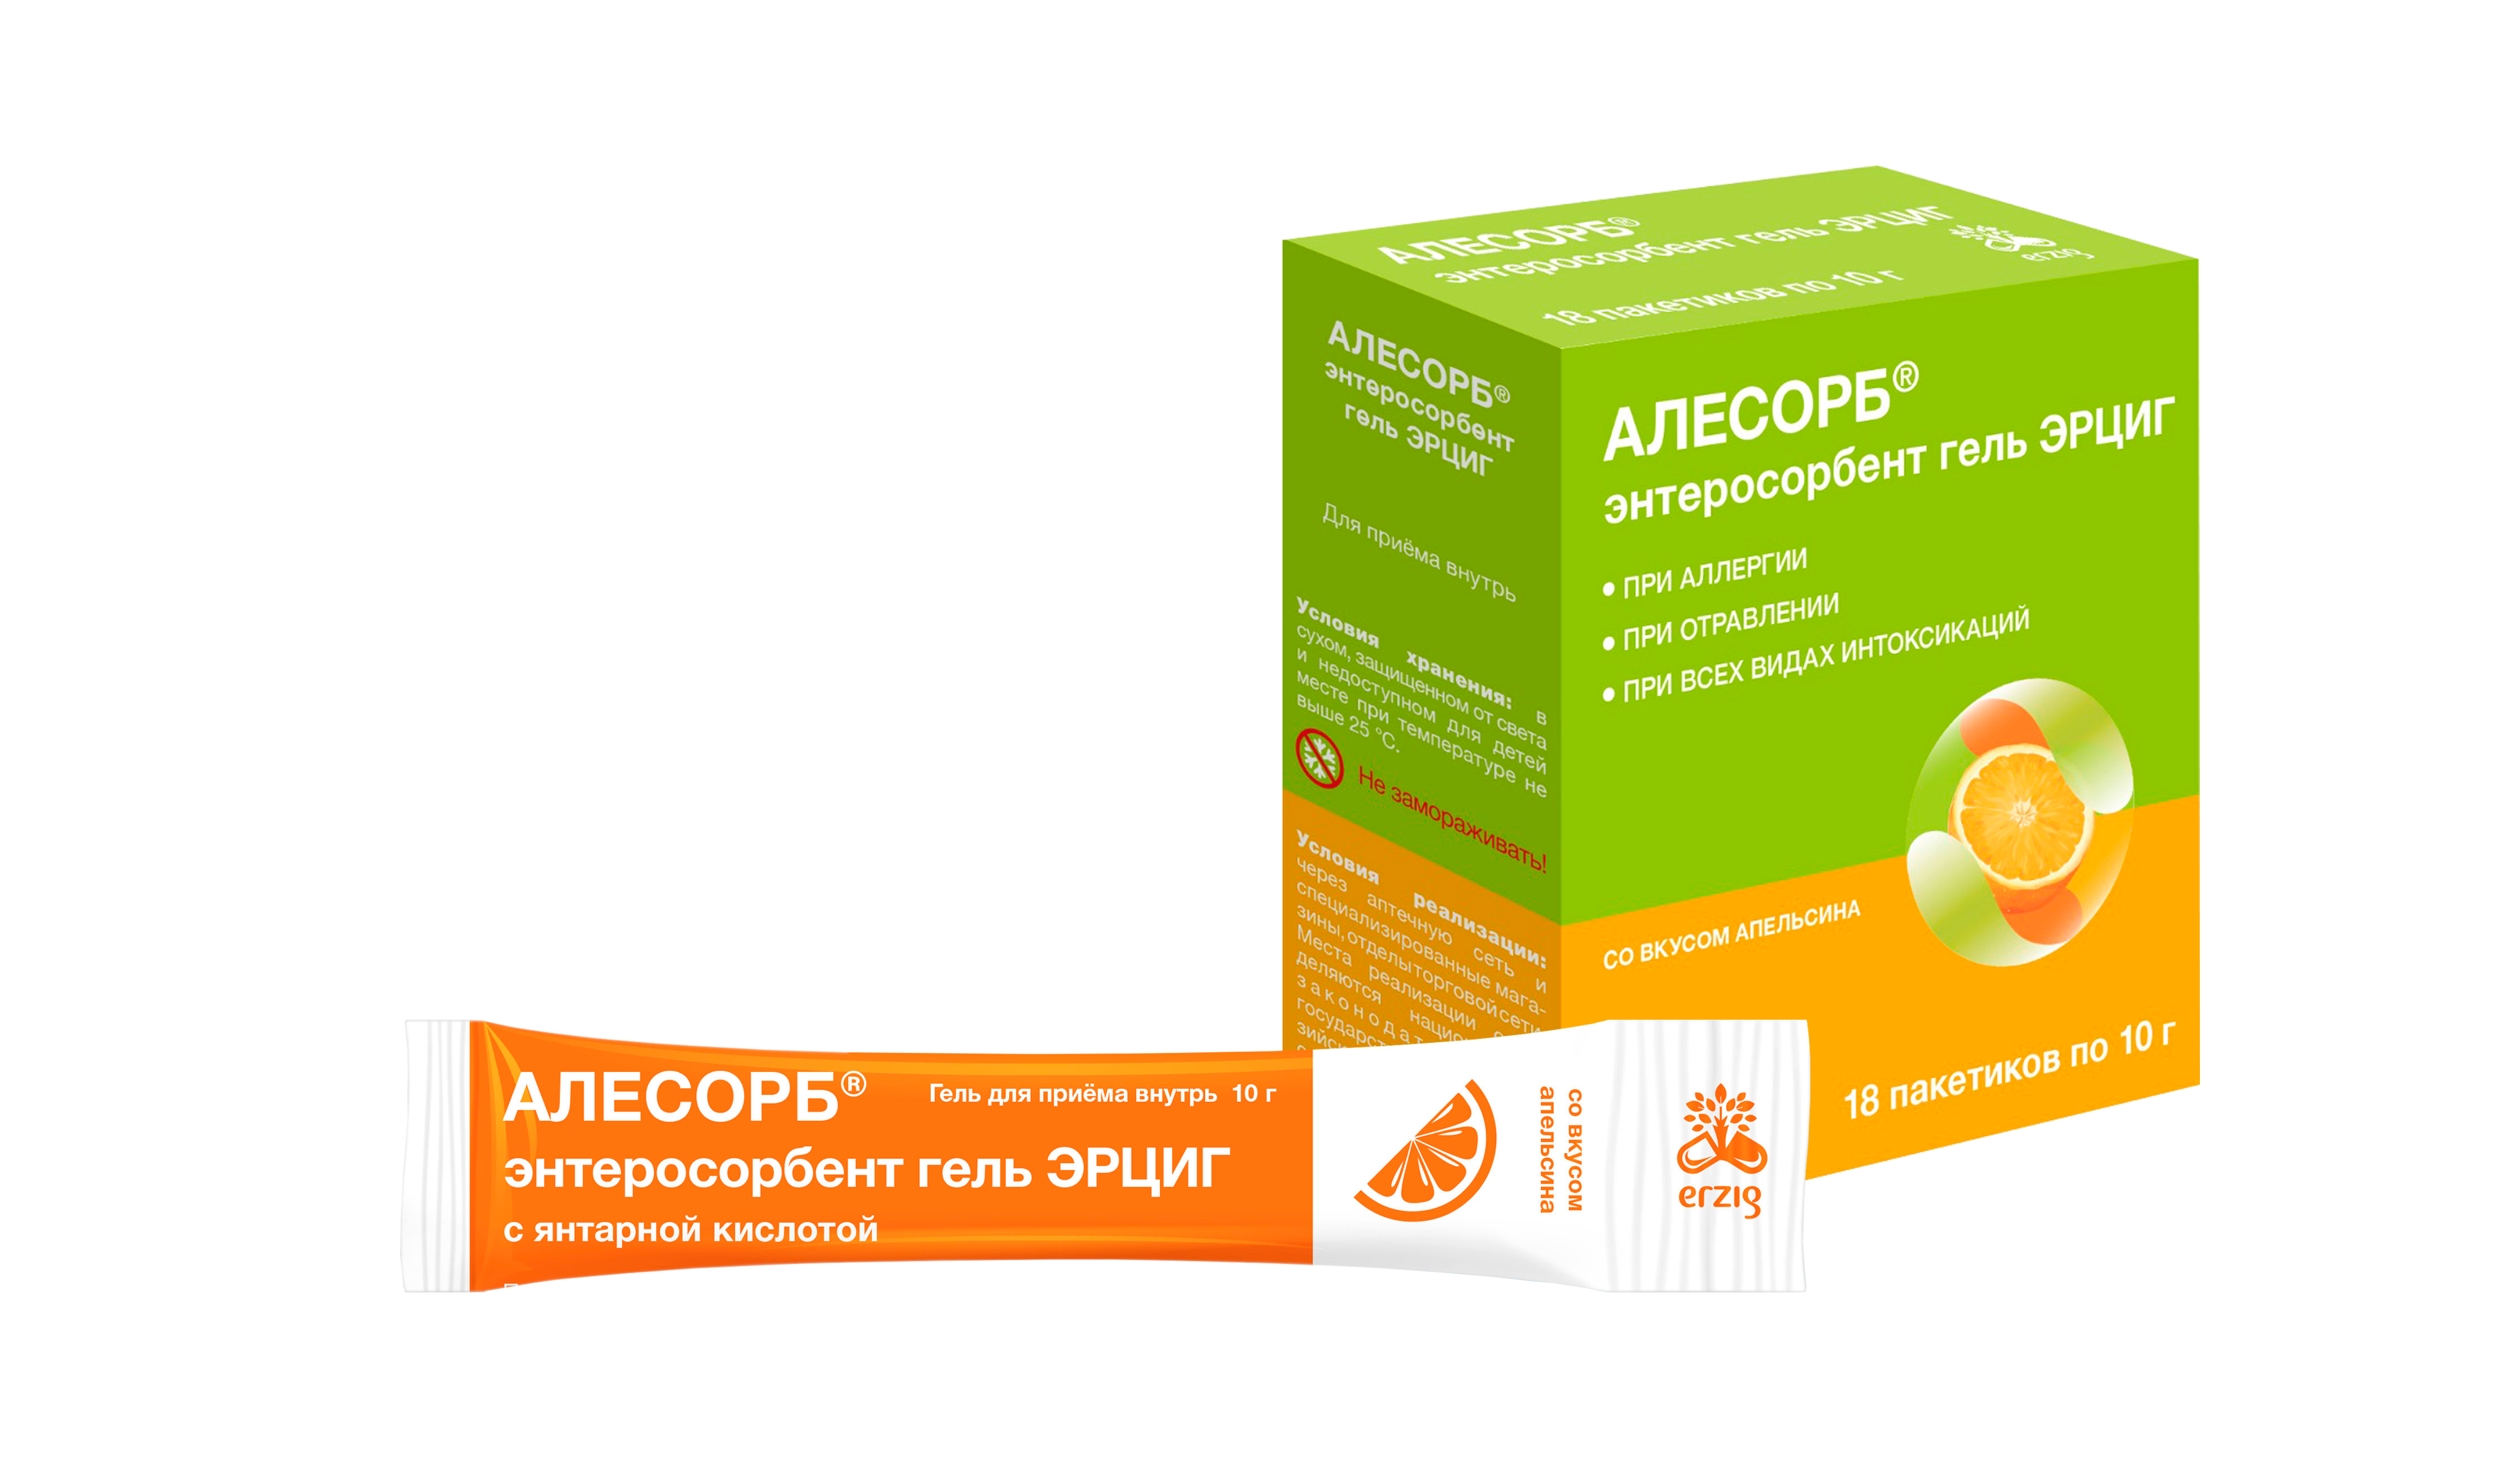 Алесорб, энтеросорбент гель Эрциг+ (апельсин), пакетики 10 г, 18 шт.